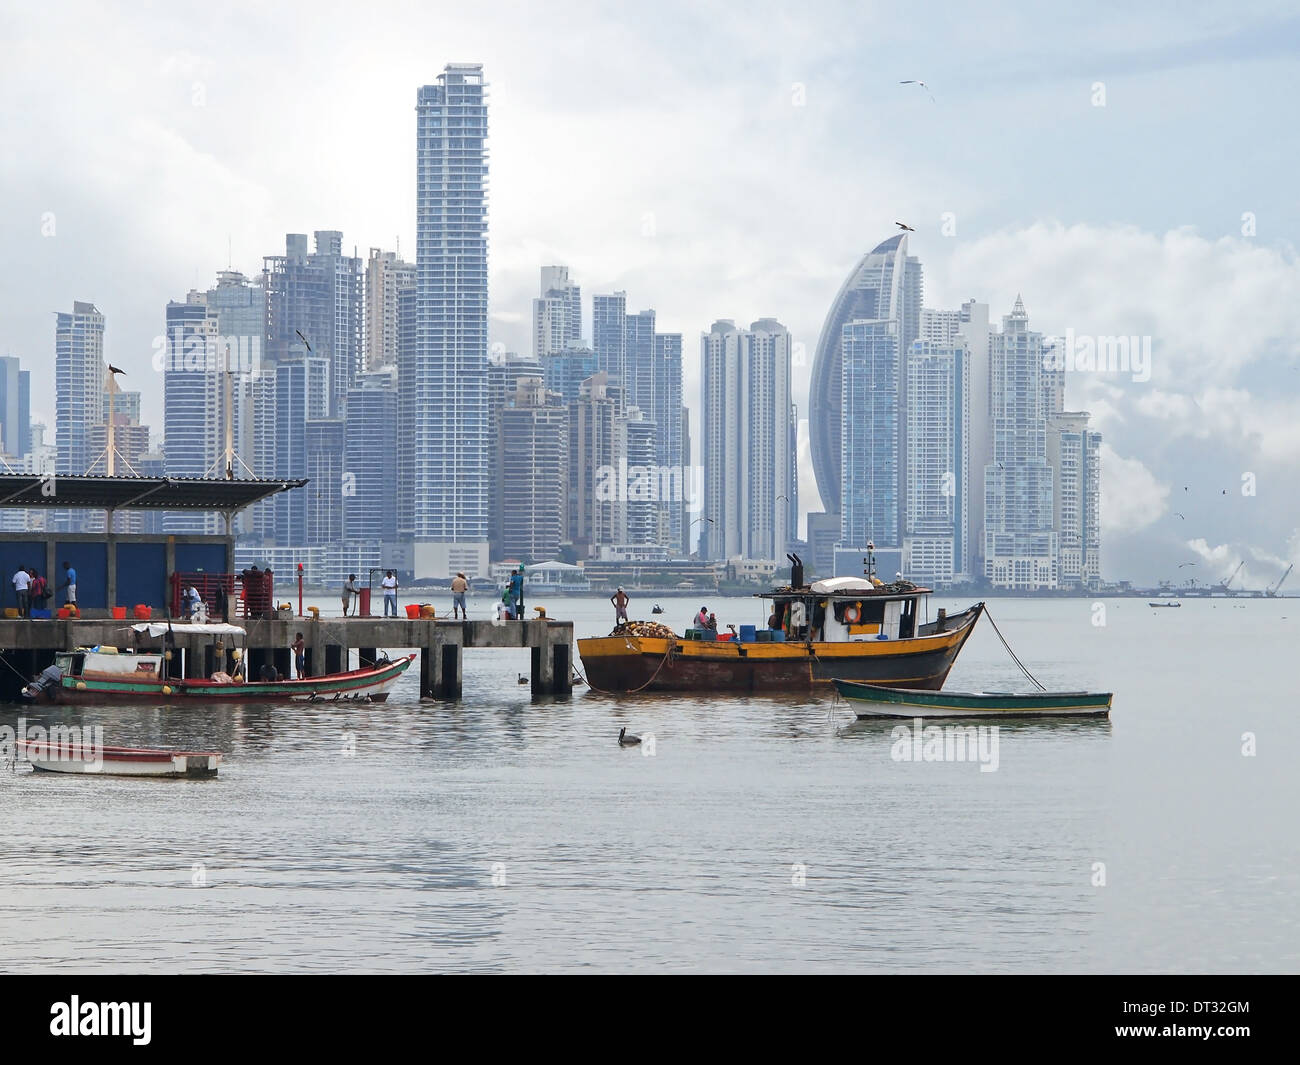 Pontile con le barche dei pescatori in primo piano e grattacieli in background, Città di Panama , Panama America Centrale Foto Stock